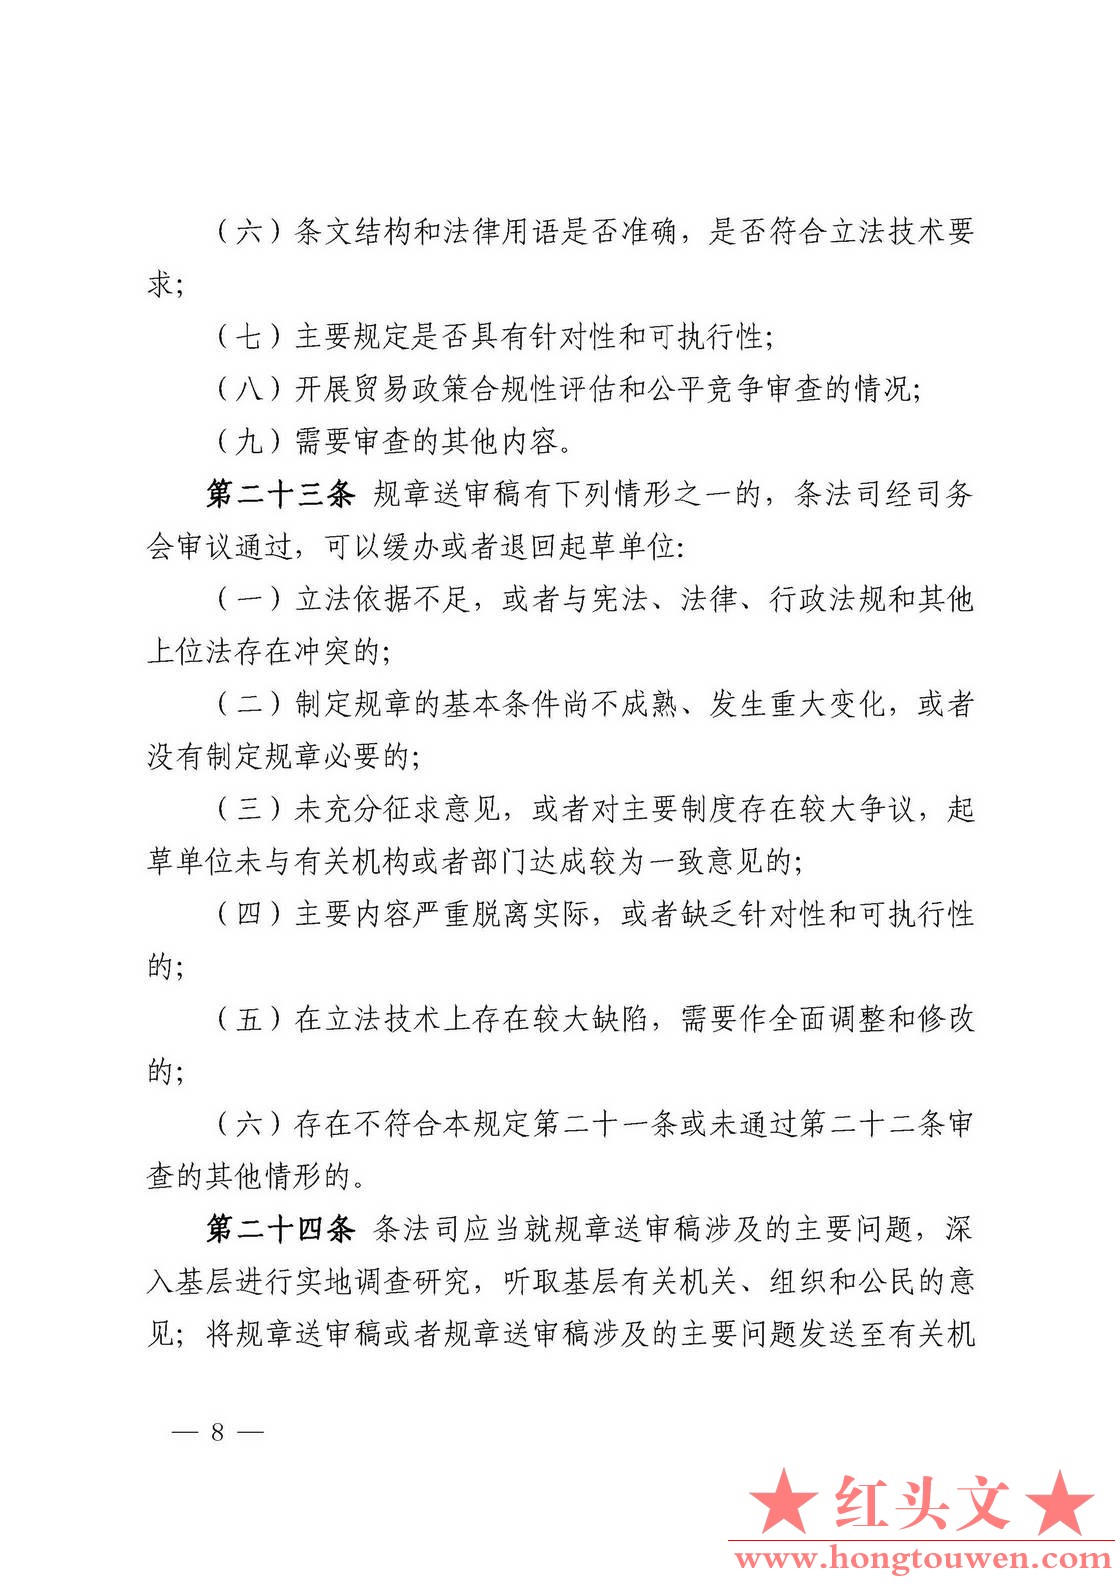 中国人民银行令[2018]3号-中国人民银行规章制定程序与管理规定_页面_08.jpg.jpg